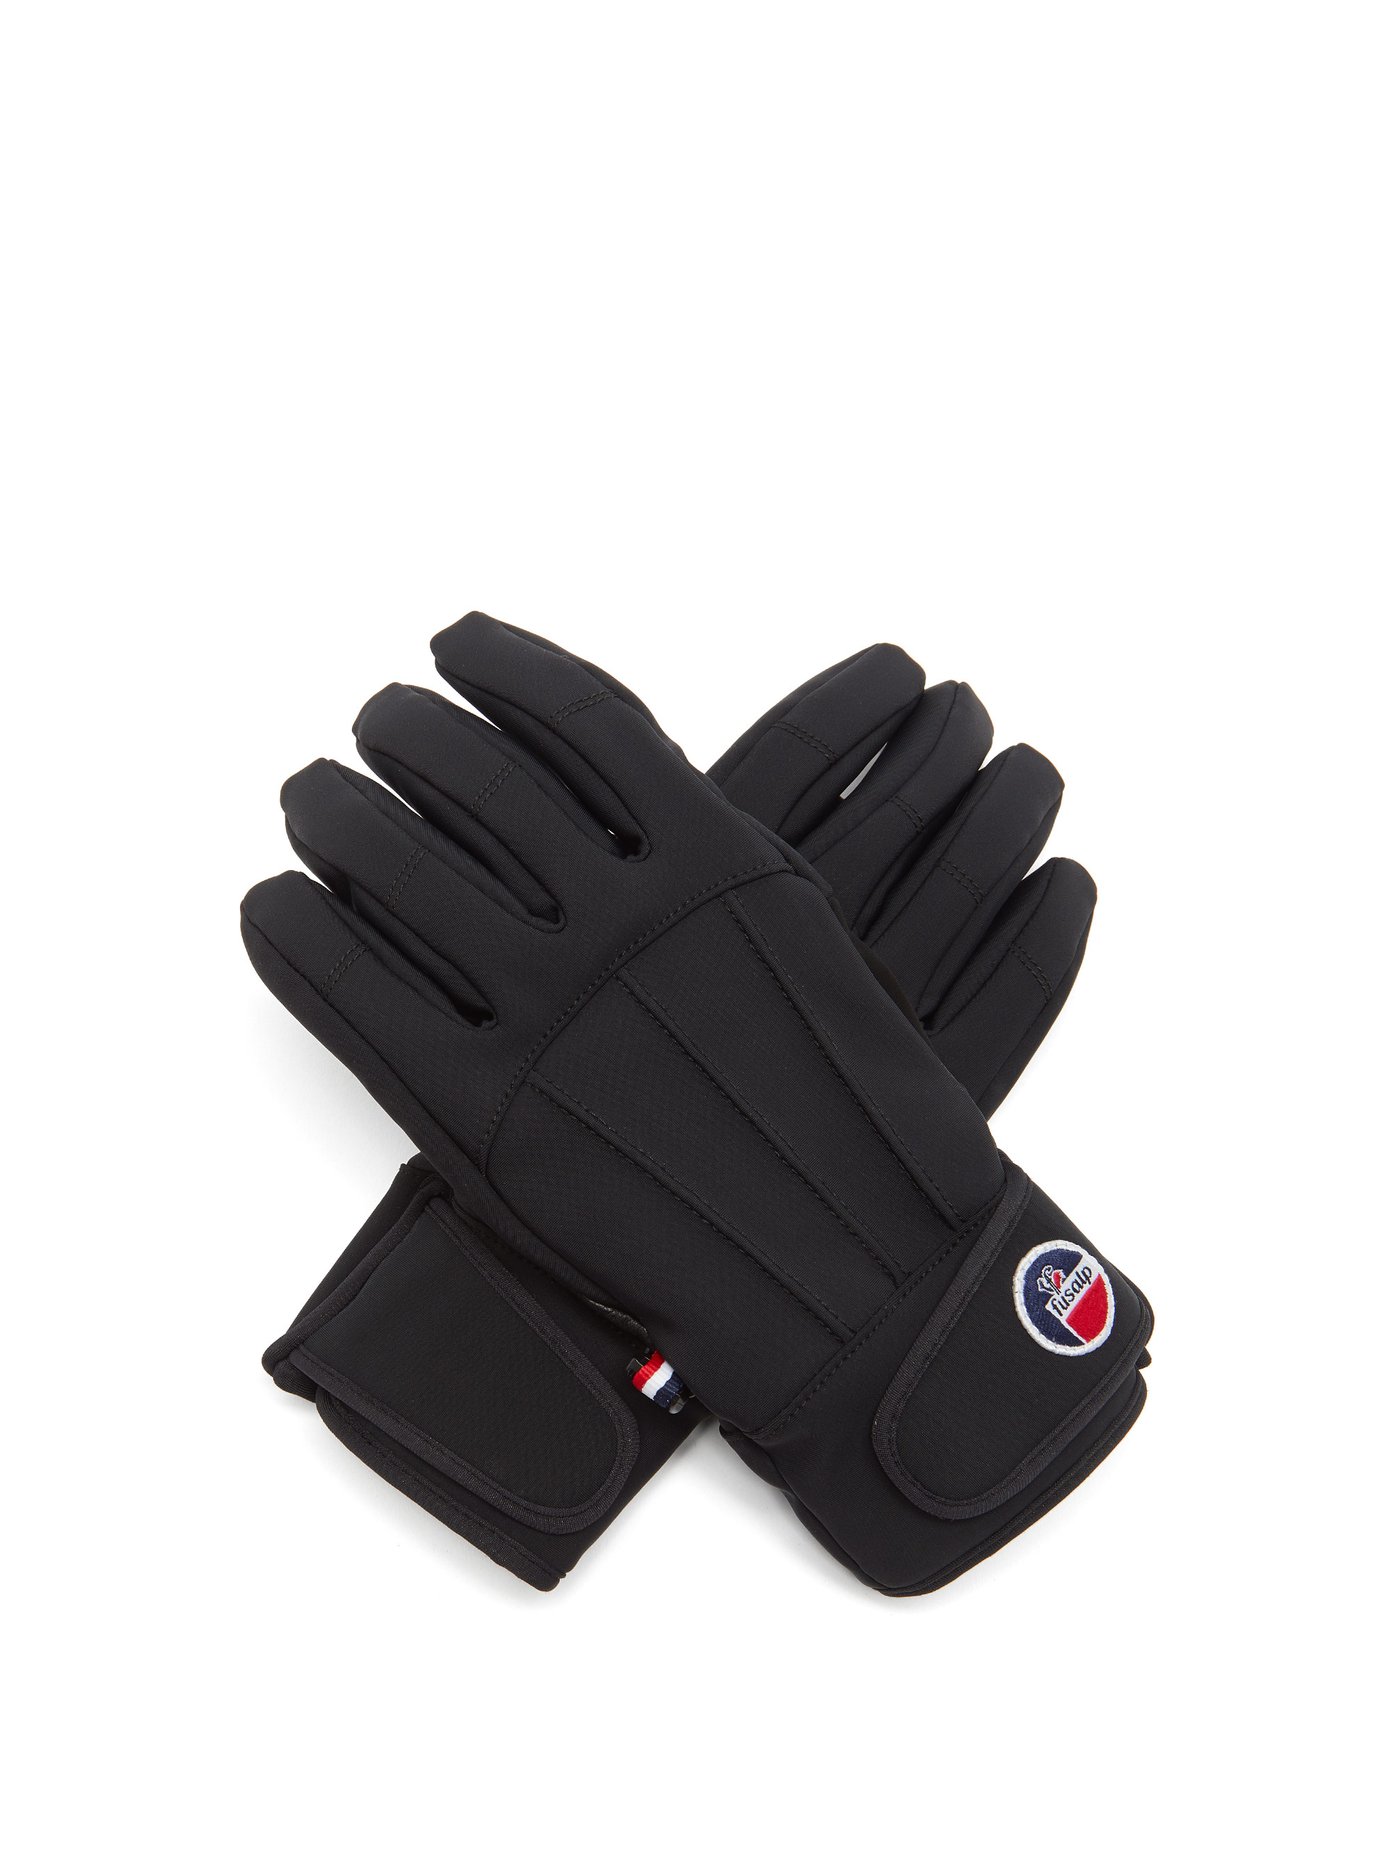 technical ski gloves